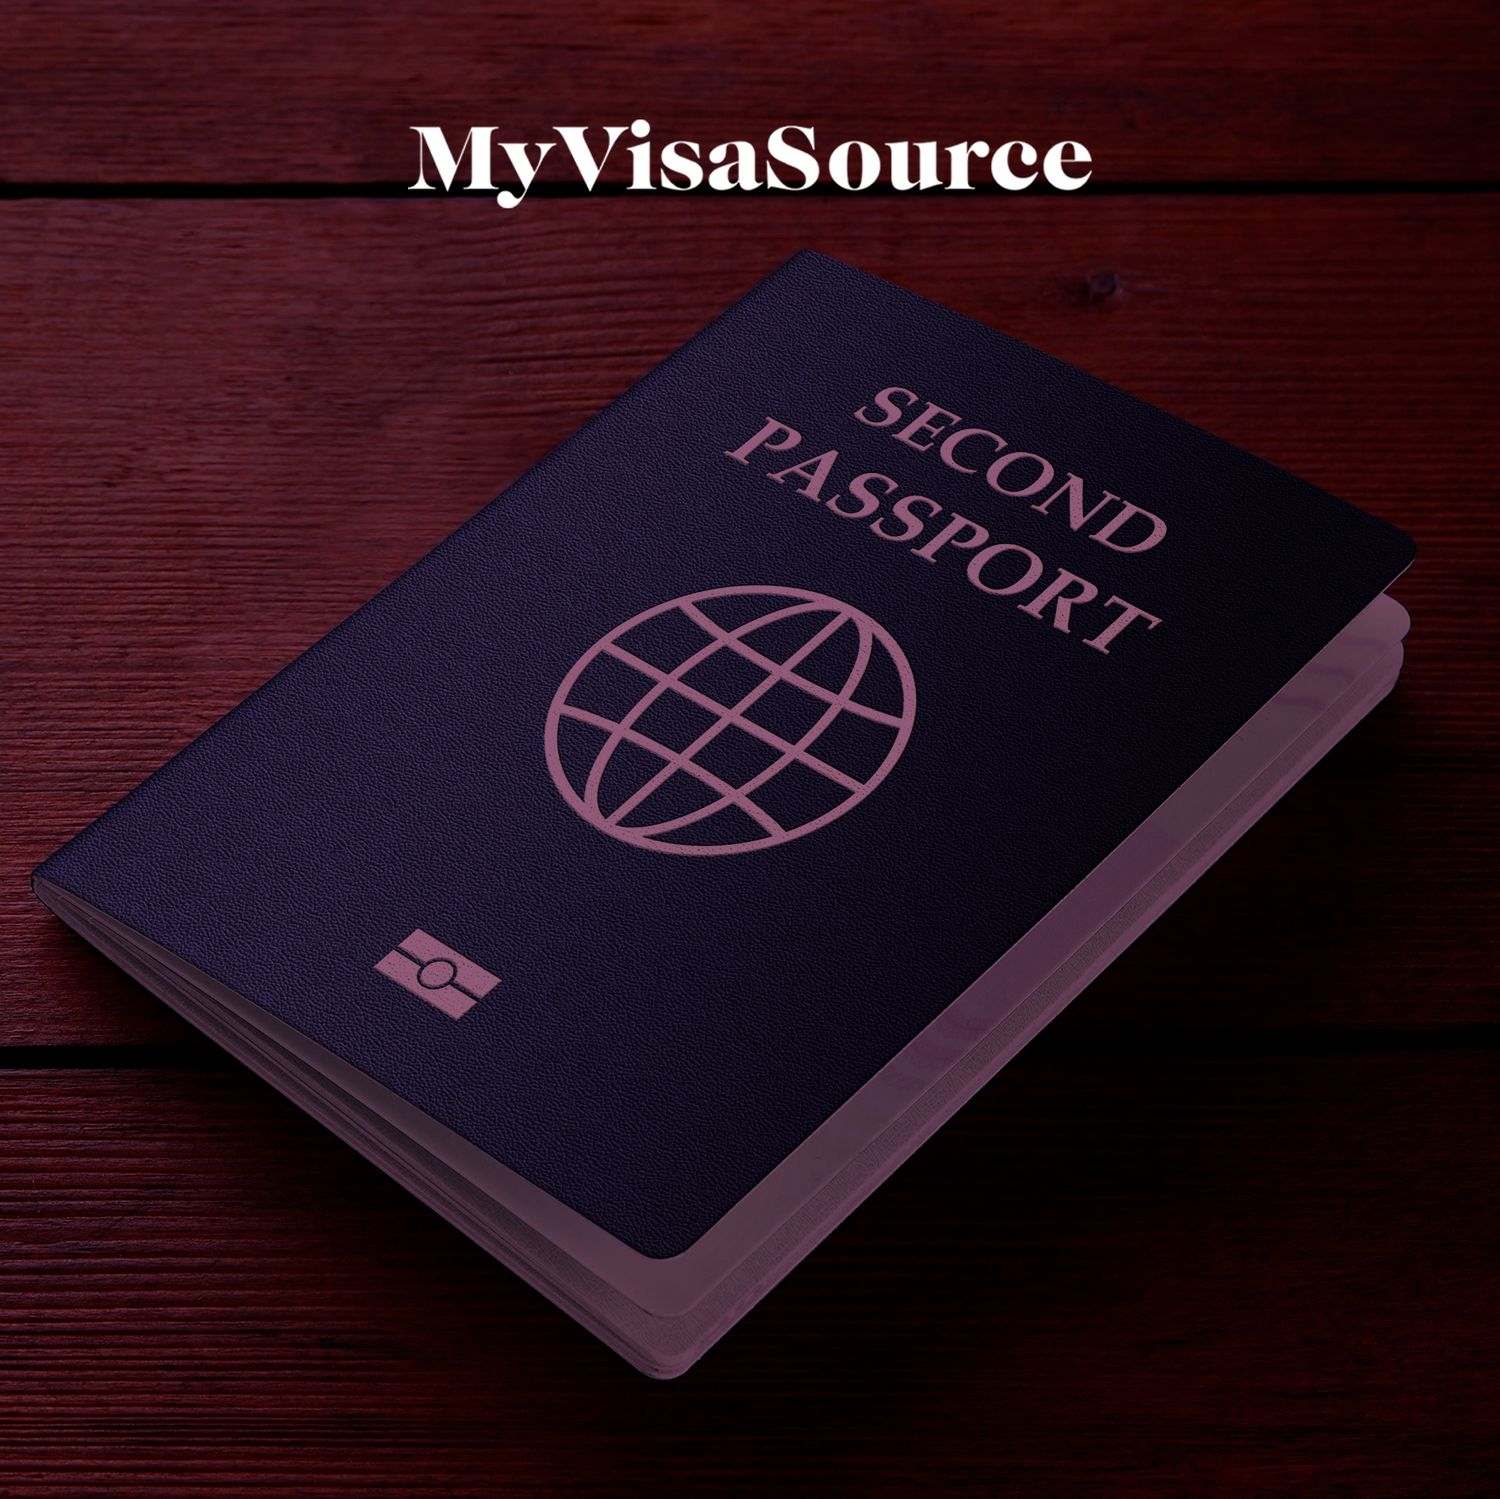 second passport written on a passport my visa source